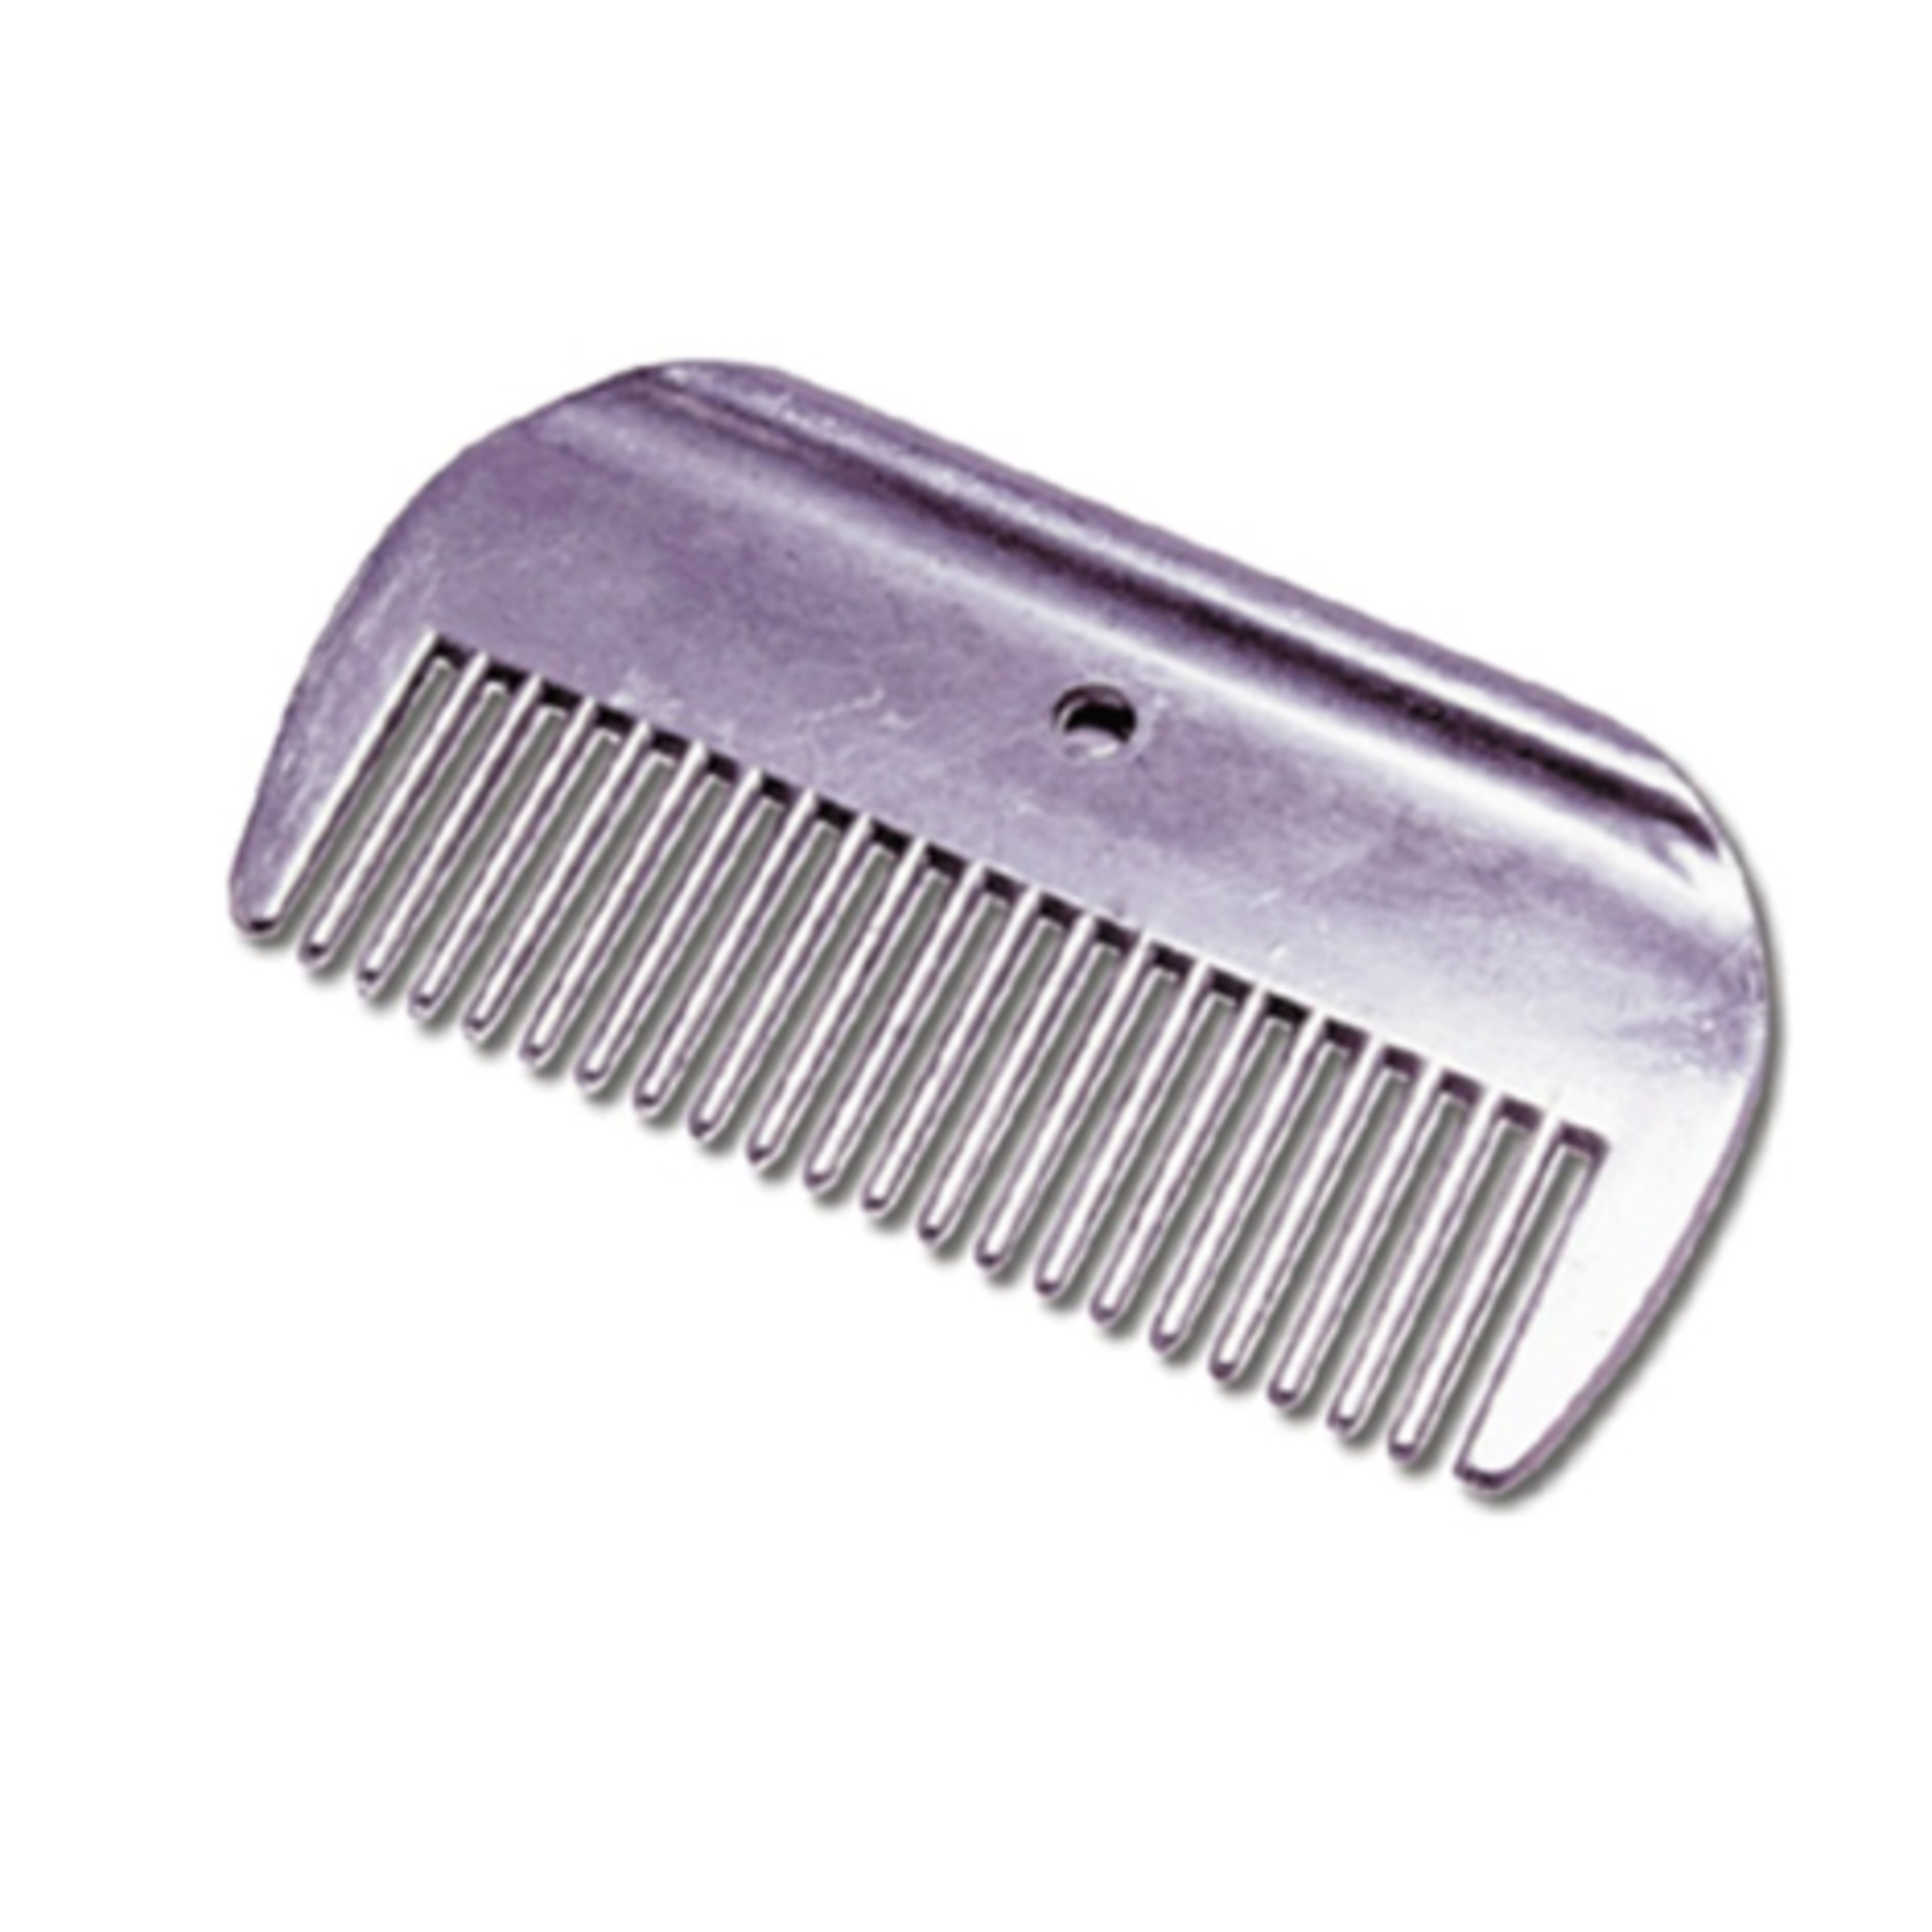 Aluminum 4" Mane Comb